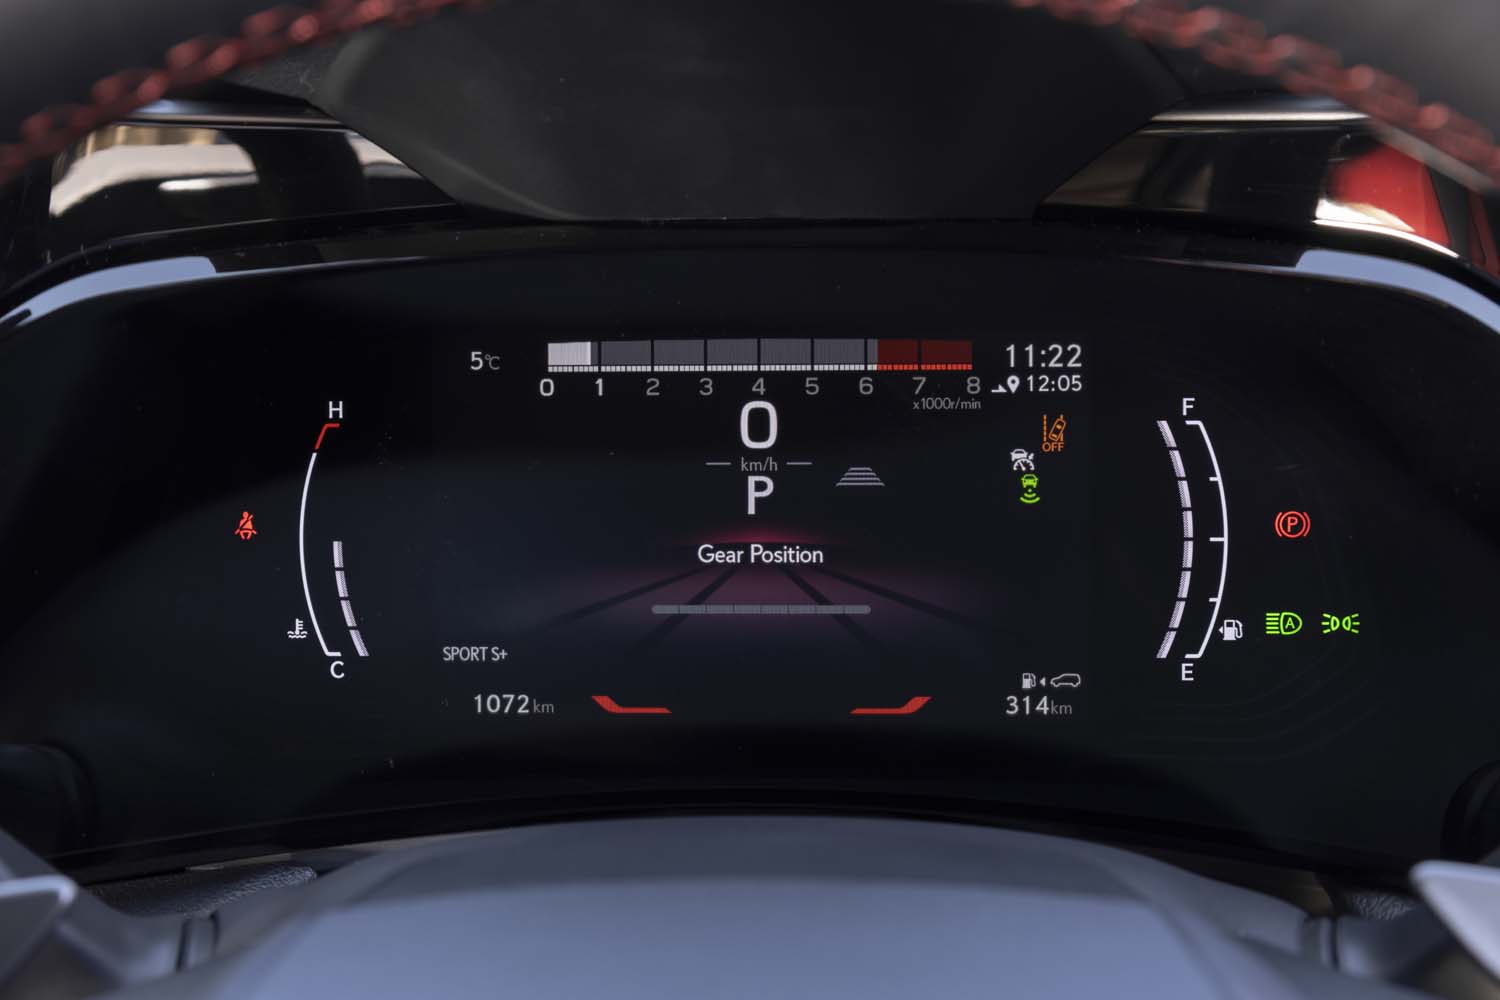 ドライブモードを「スポーツS＋」にしたところ。表示が赤基調になり、エンジン回転計がバーグラフ式に変化する。